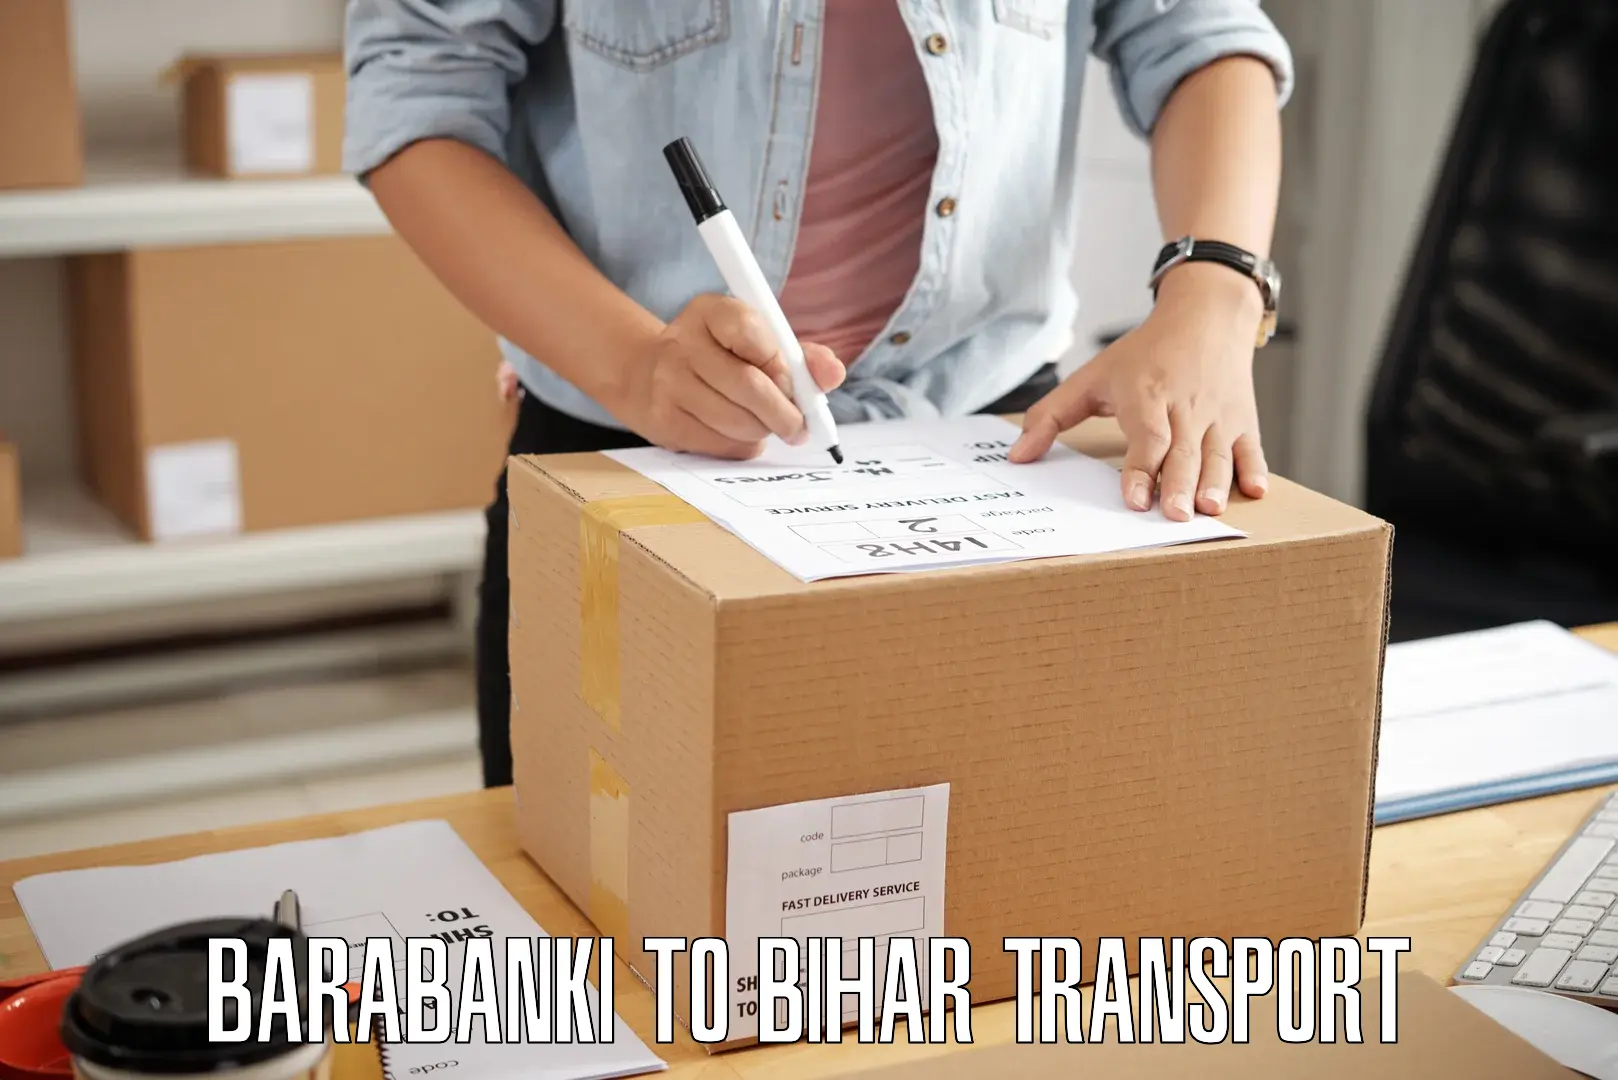 Two wheeler parcel service Barabanki to Malmaliya